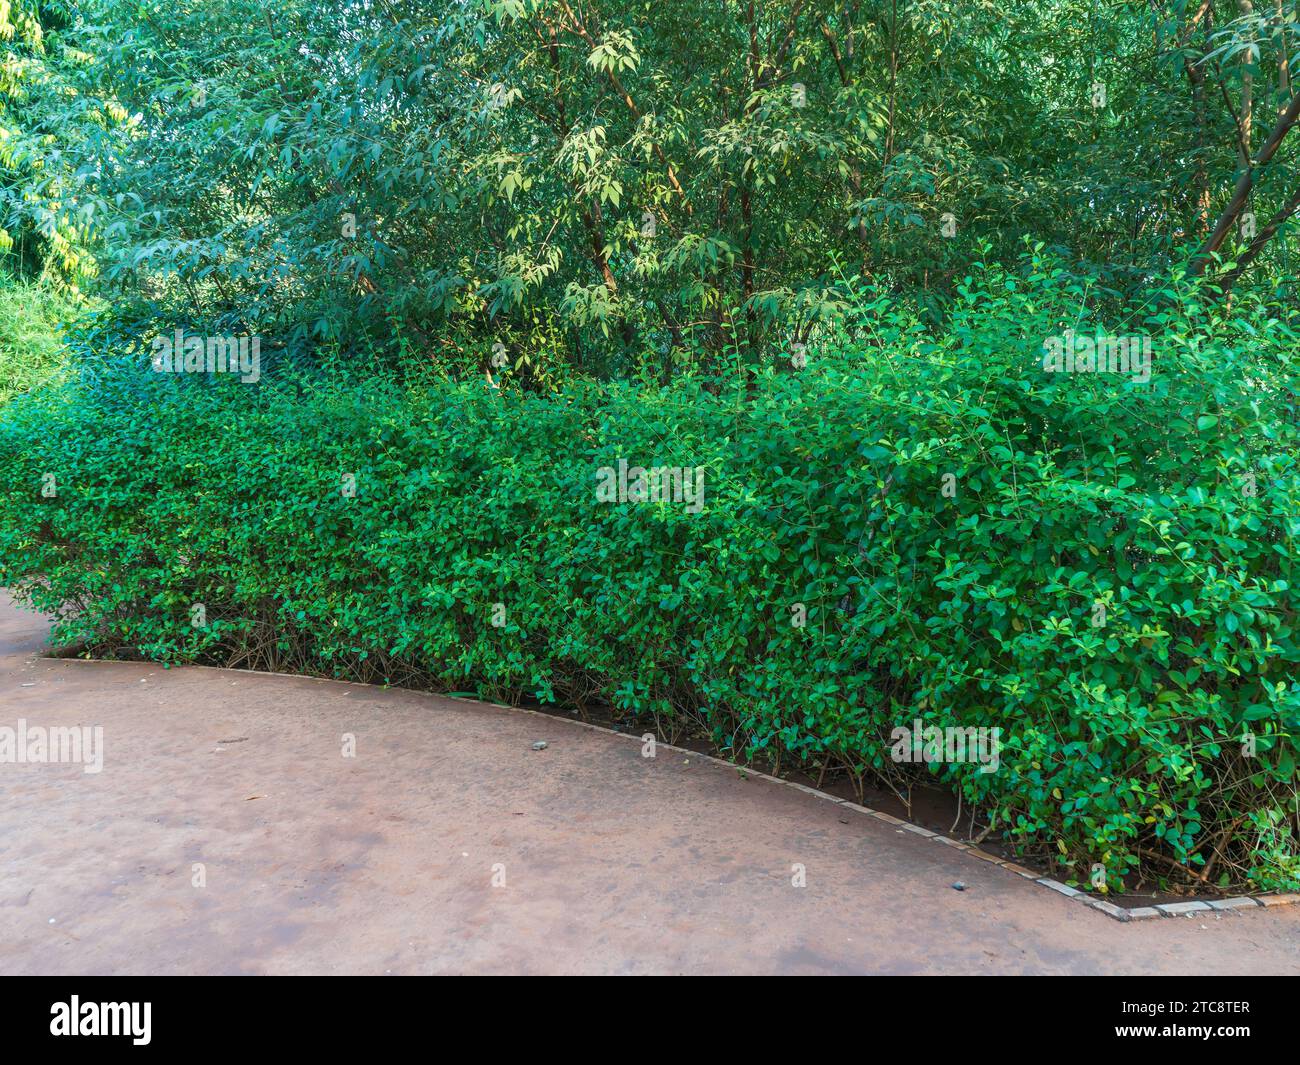 Questa è una bella foto del giardino. in questa foto sono incluse piante alberi blu cielo e splendide viste sulla natura. Questa è Alamy Exclusive image Garden Photo Foto Stock